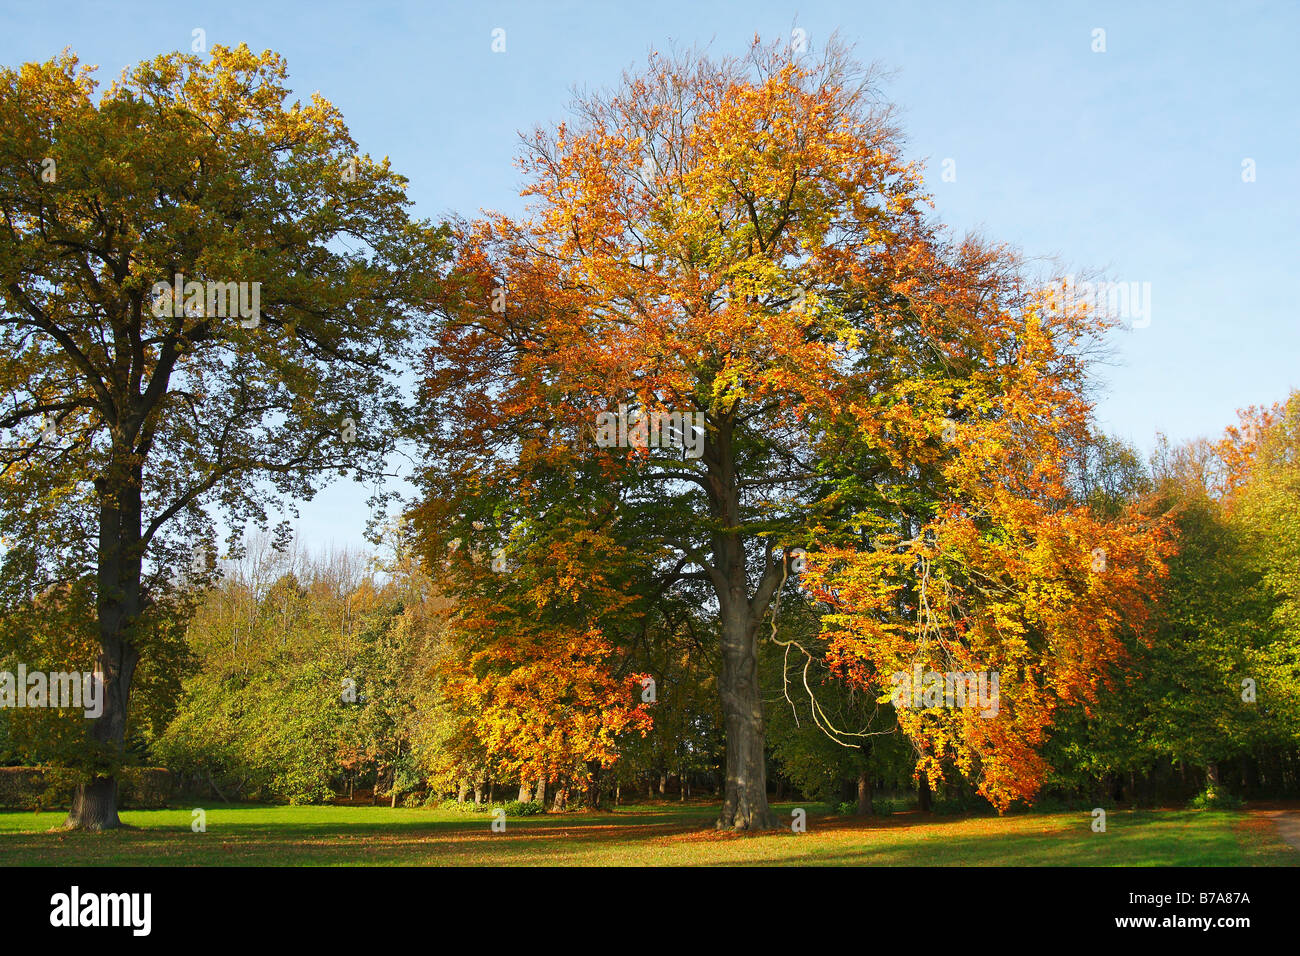 Beech, común europeo de haya (Fagus sylvatica) e inglés (Quercus robus) en un parque, hojas en colores de otoño Foto de stock